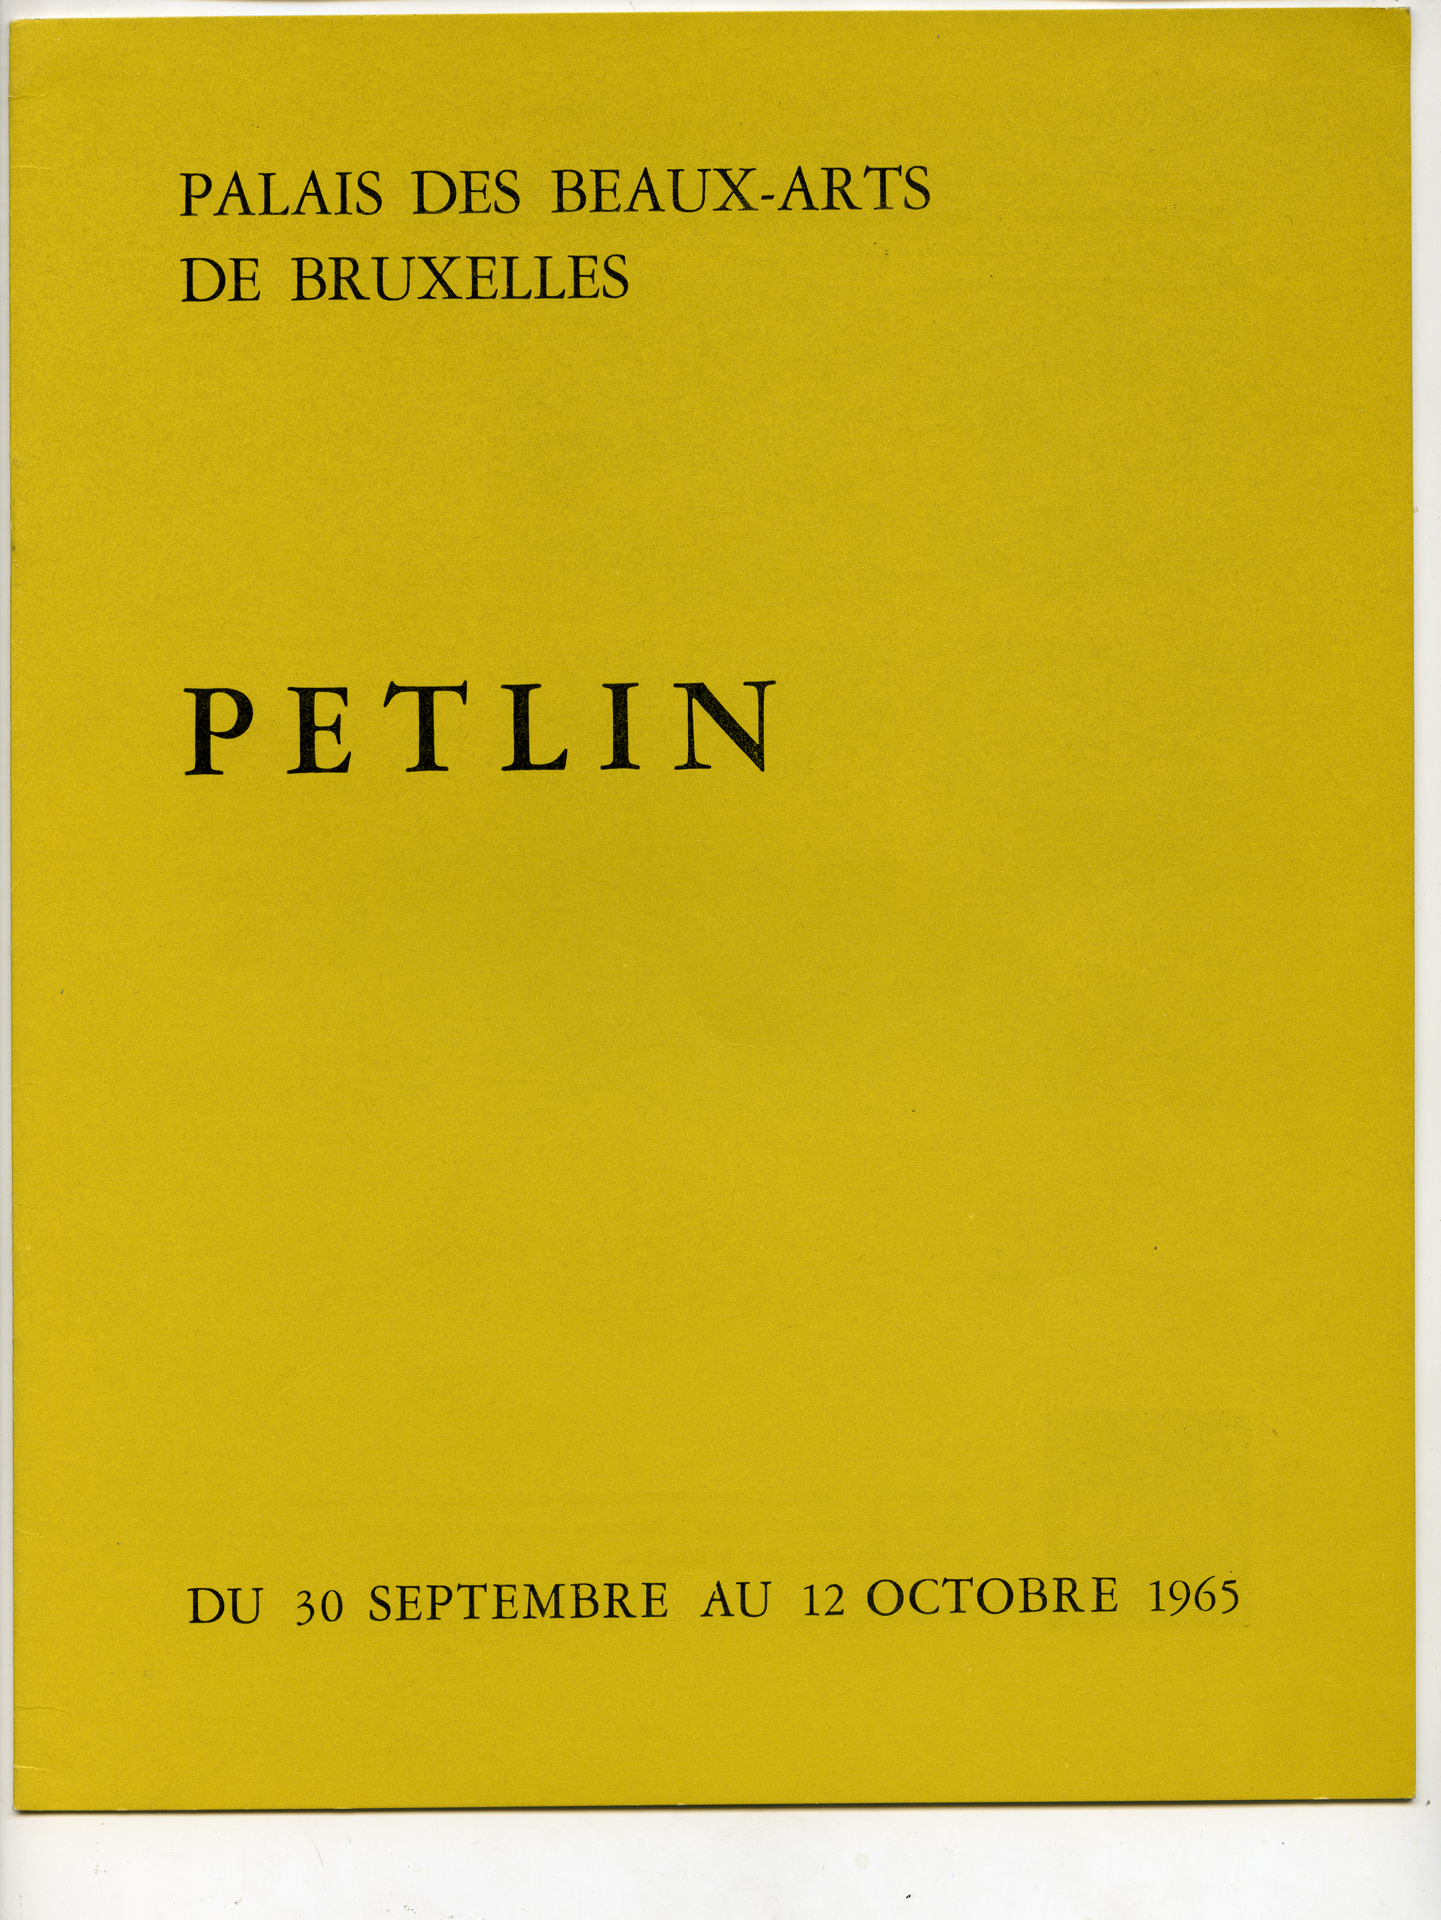 Exhibition at Palais ds Beaux Arts, Bruxelles (1965)